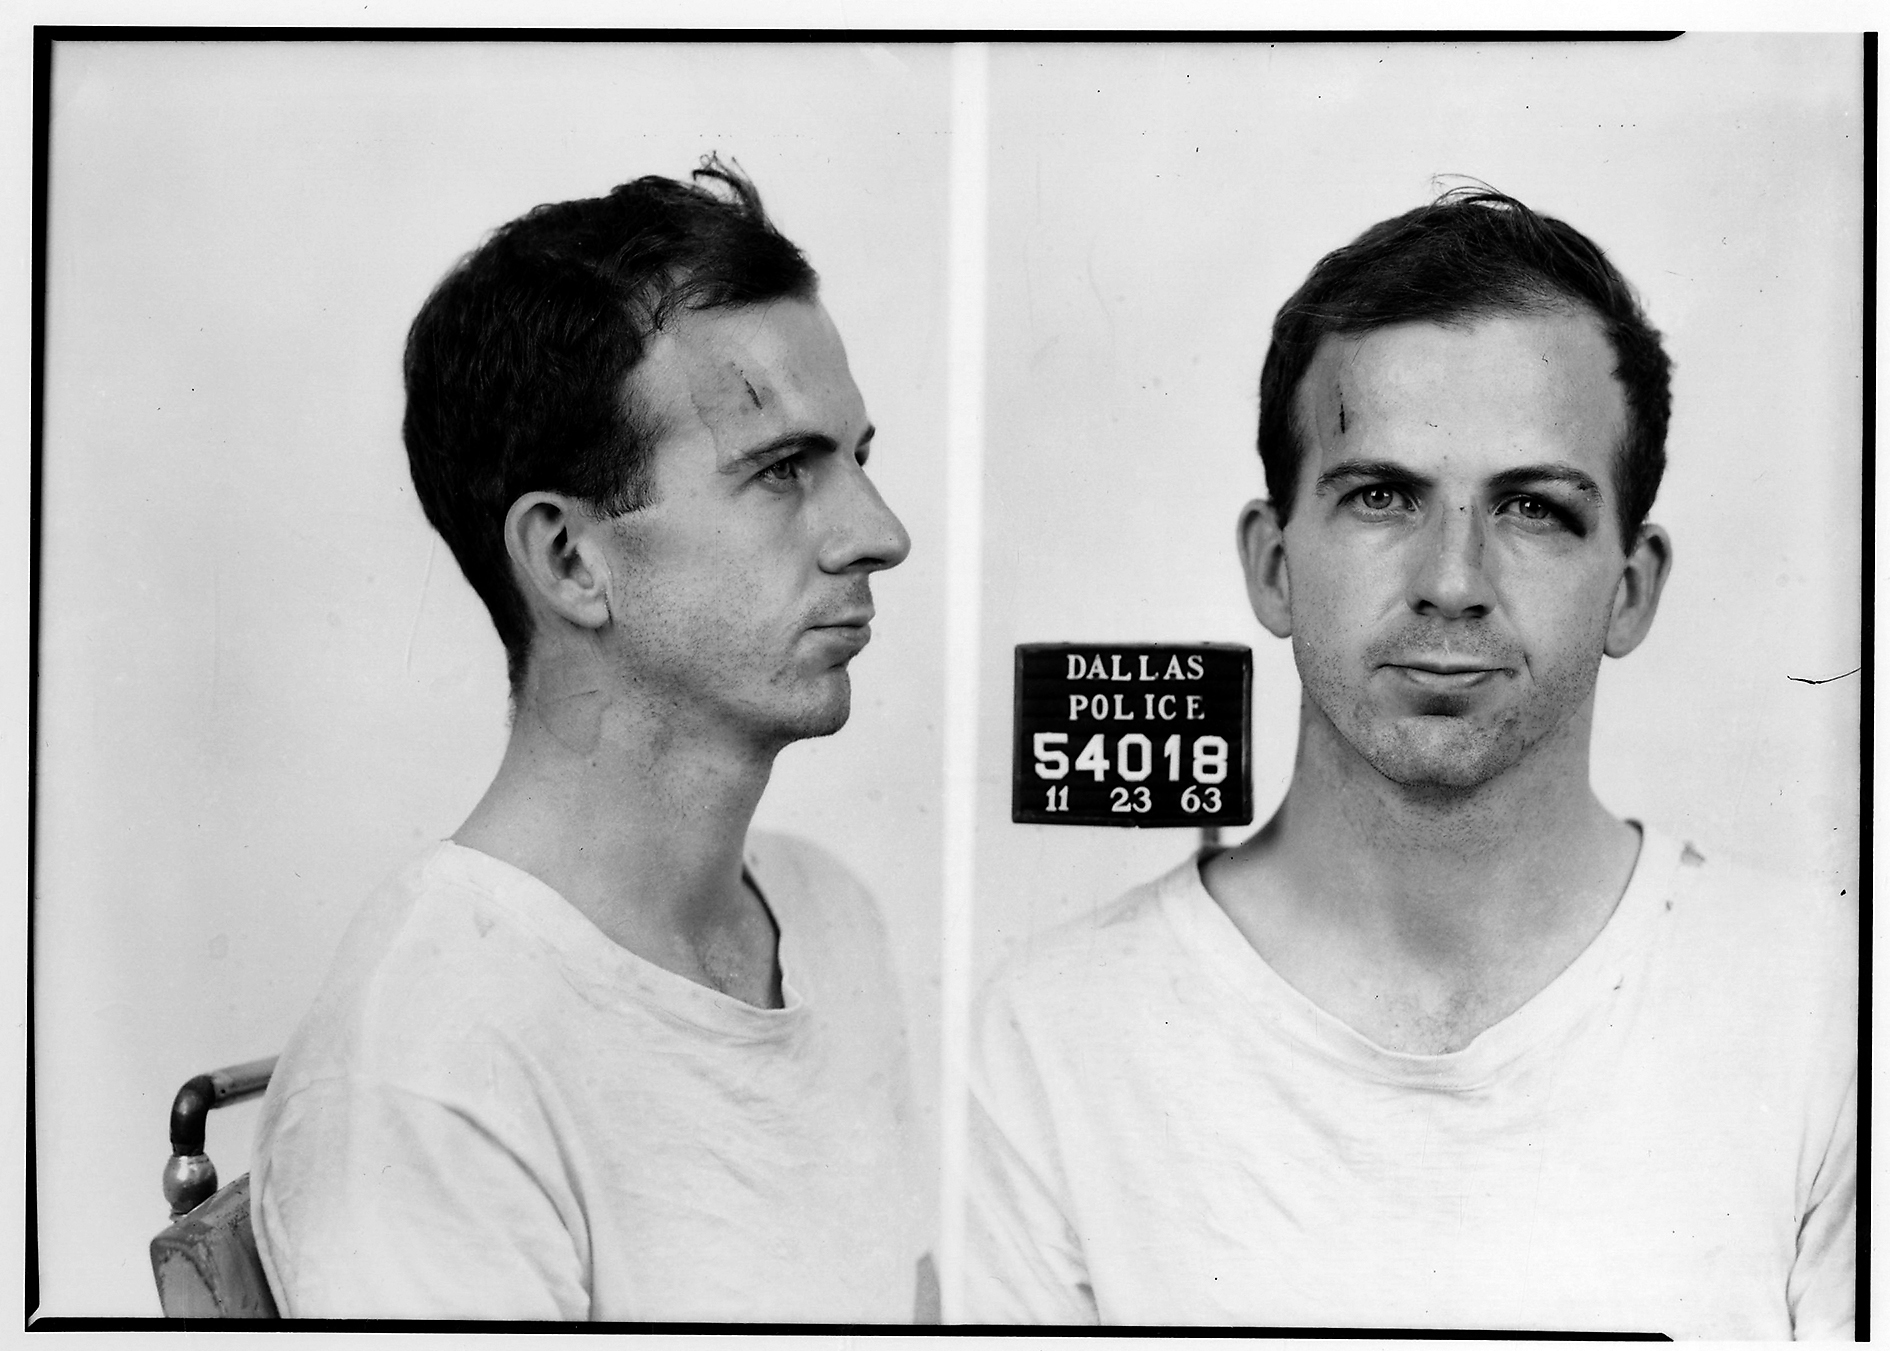 Ficha policial de Lee Harvey Oswald, tomada en Dallas el 23 de noviembre del 63.